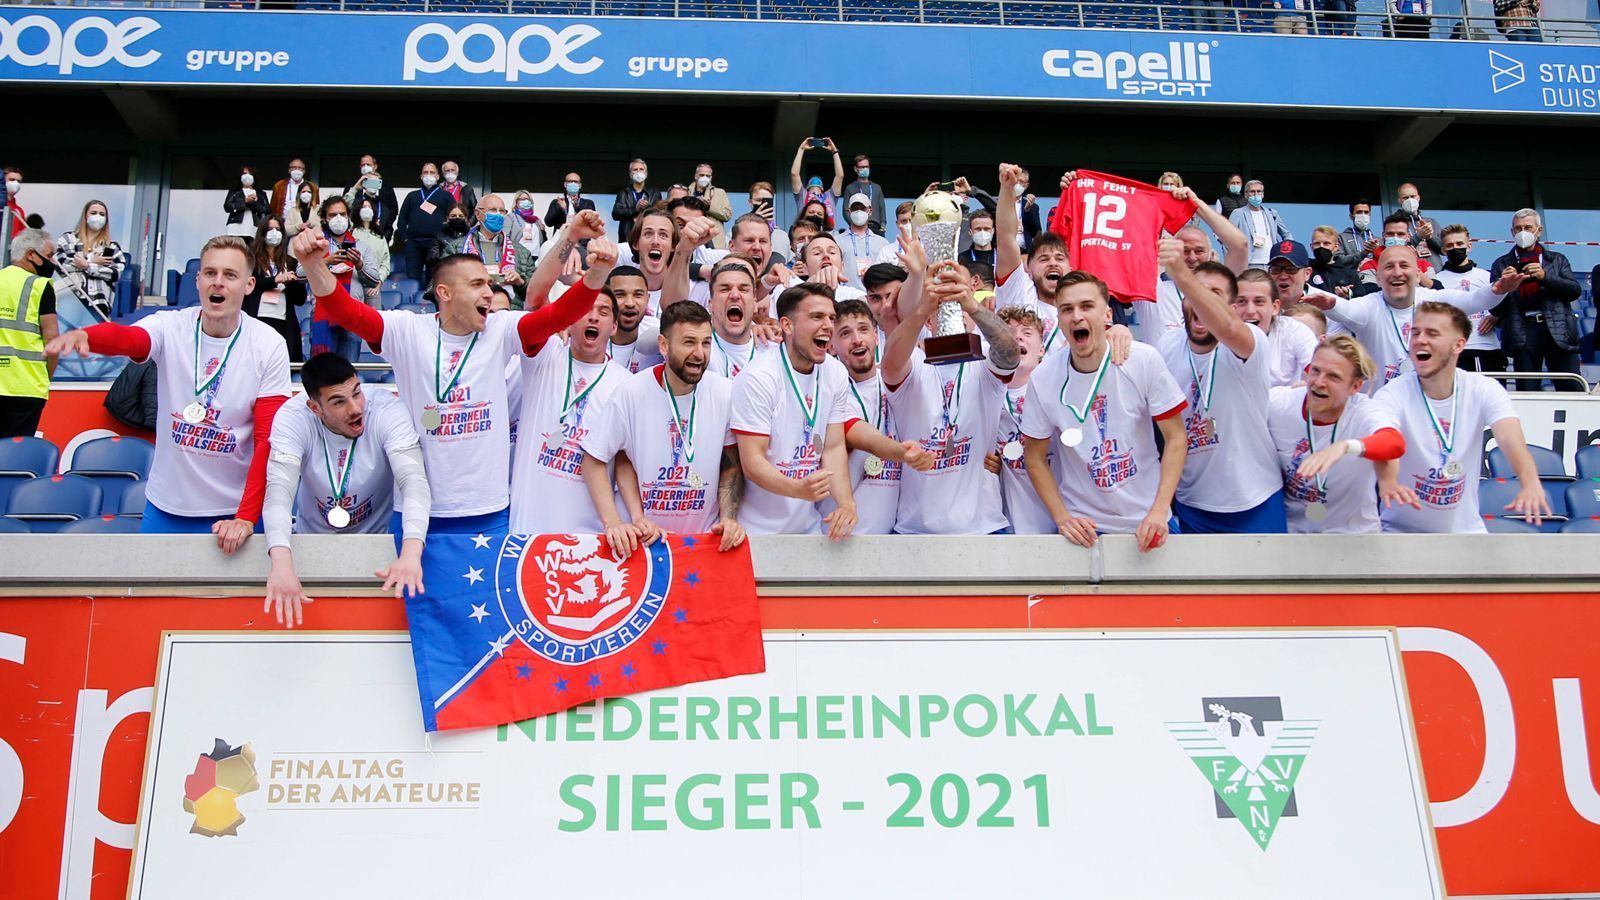 
                <strong>Wuppertaler SV</strong><br>
                Überraschung am Niederrhein: Nachdem die Favoriten aus Duisburg und Essen ihre jeweiligen Halbfinalspiele verloren, standen sich im Finale der Wuppertaler SV und der SV Straelen gegenüber. Im Regionalliga-West-Duell siegte der WSV am Ende knapp mit 2:1 und ist erstmals seit 2007 wieder im DFB-Pokal dabei. 
              